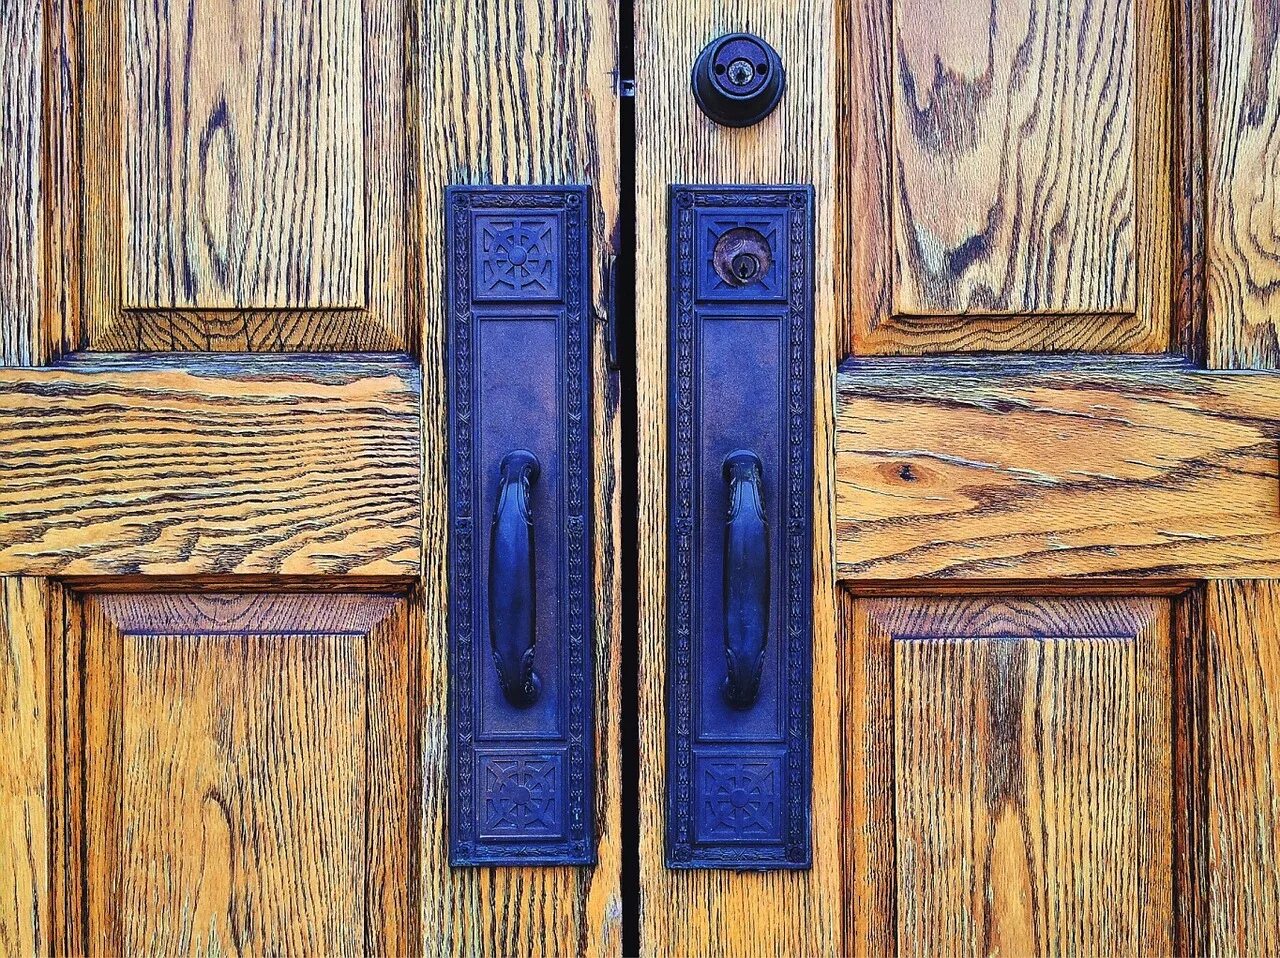 Запертые двери adler. Деревянная дверь. Закрытая дверь. Синяя деревянная дверь. Двери под старину из дерева.